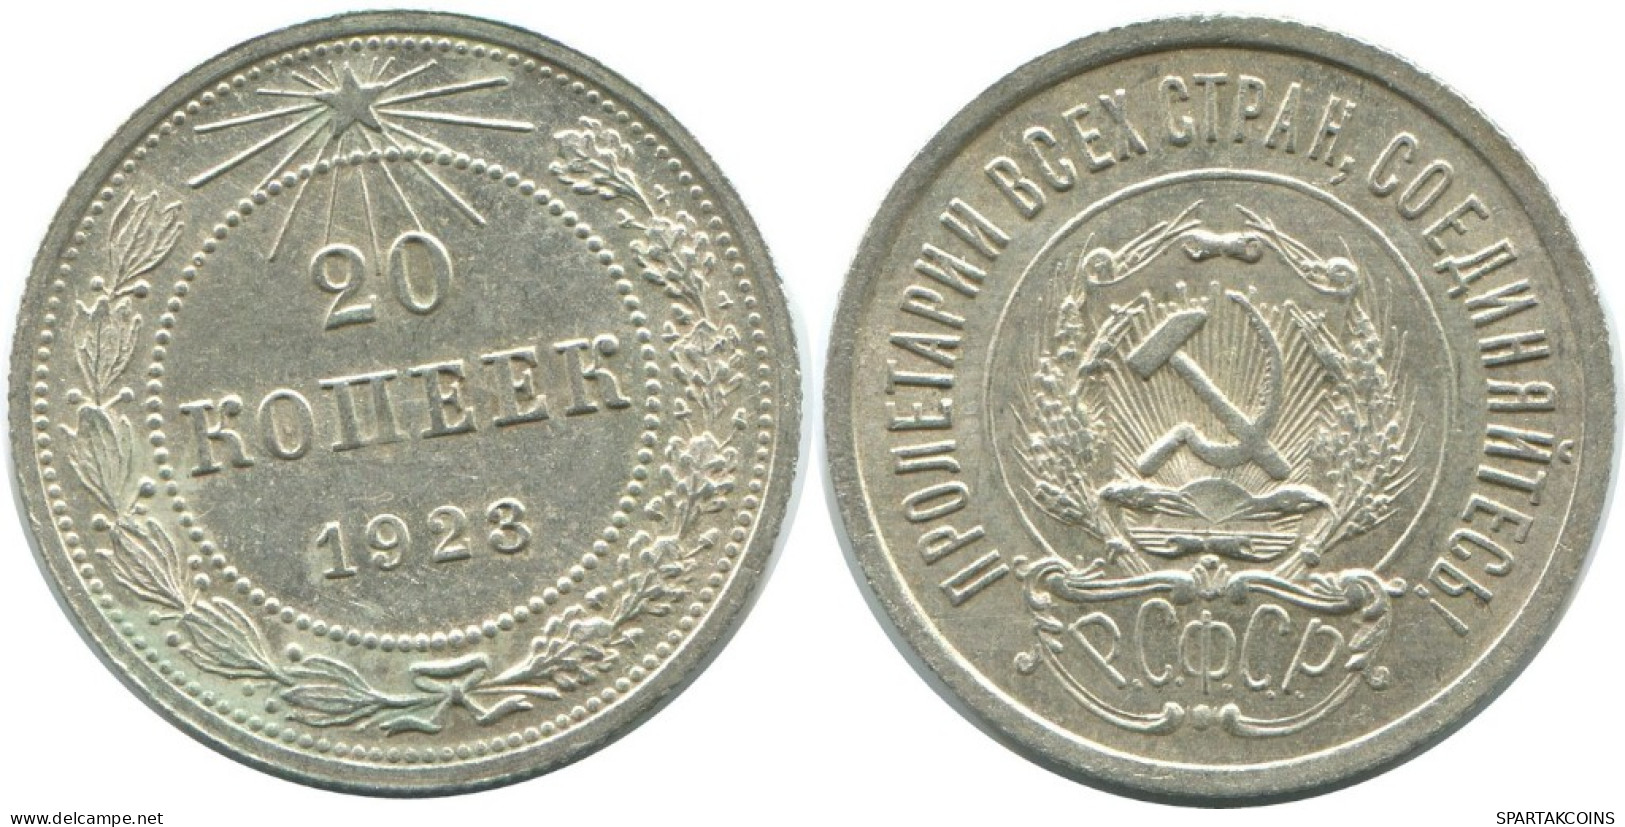 20 KOPEKS 1923 RUSSIA RSFSR SILVER Coin HIGH GRADE #AF558.4.U.A - Rusland